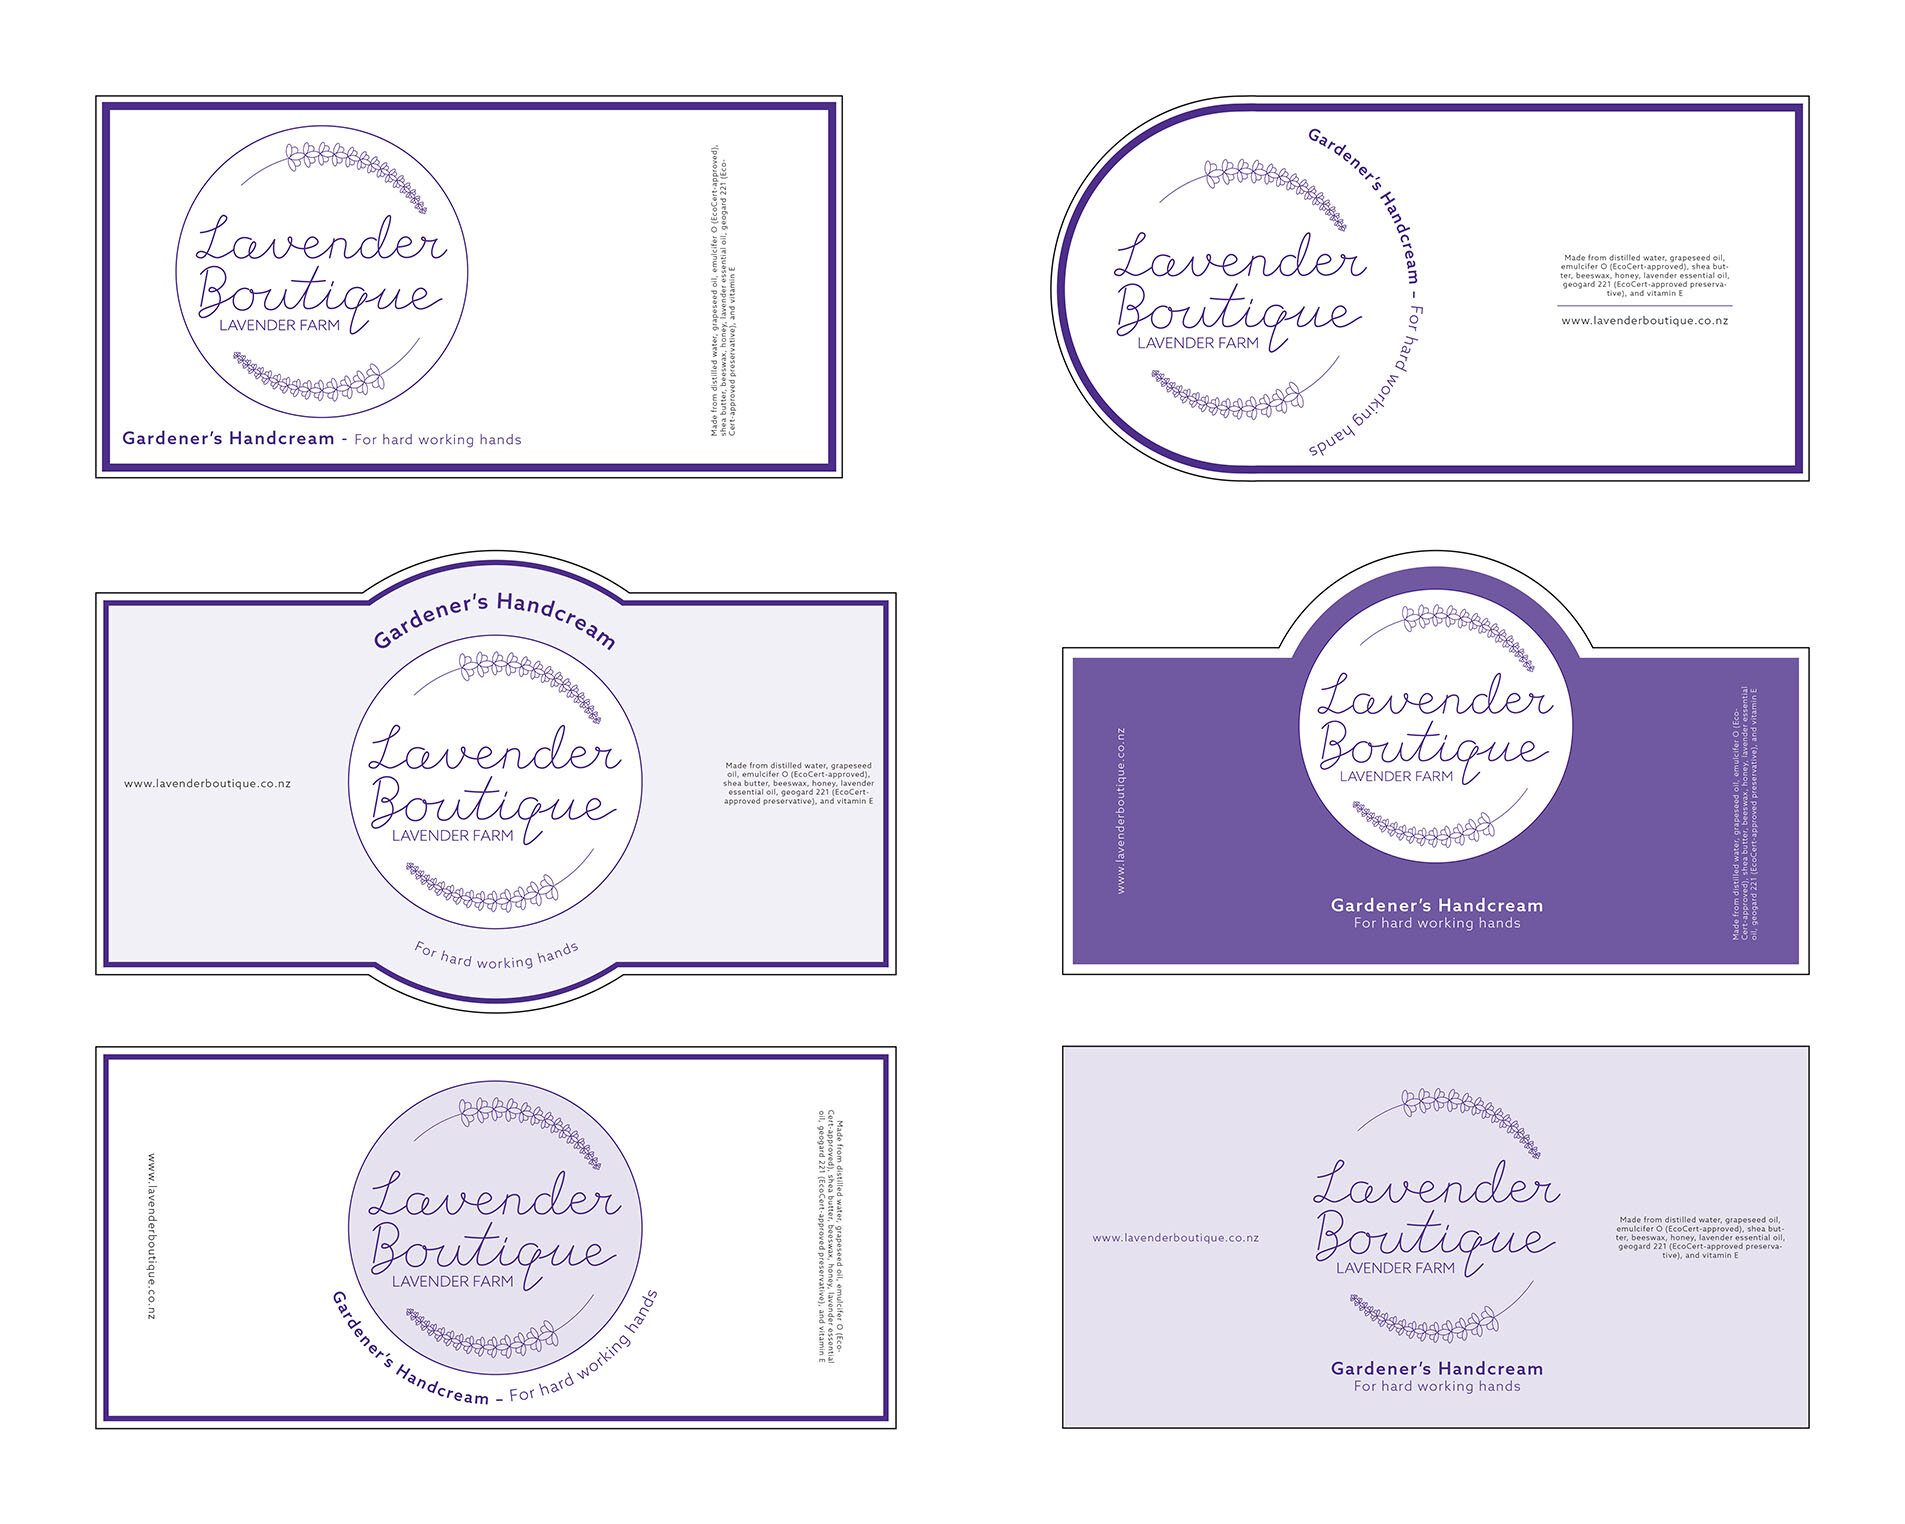 Lavender Boutique - Label concepts-2.jpg